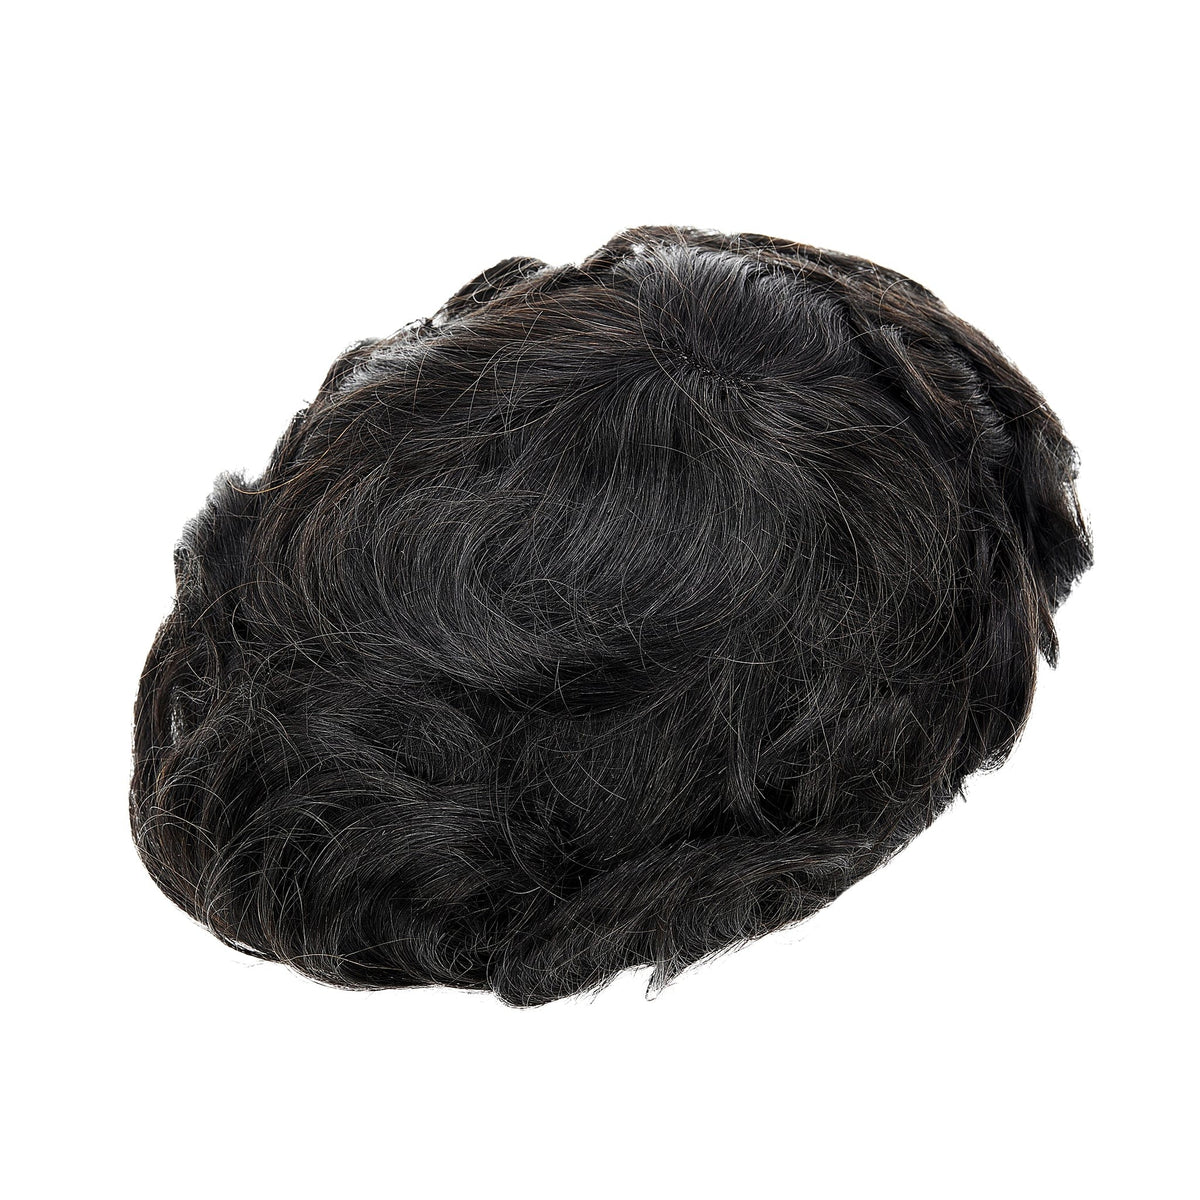 Toupets aus französischer Spitze mit Hautrückseite und -seiten | Herren-Haarteile im Q6-Stil